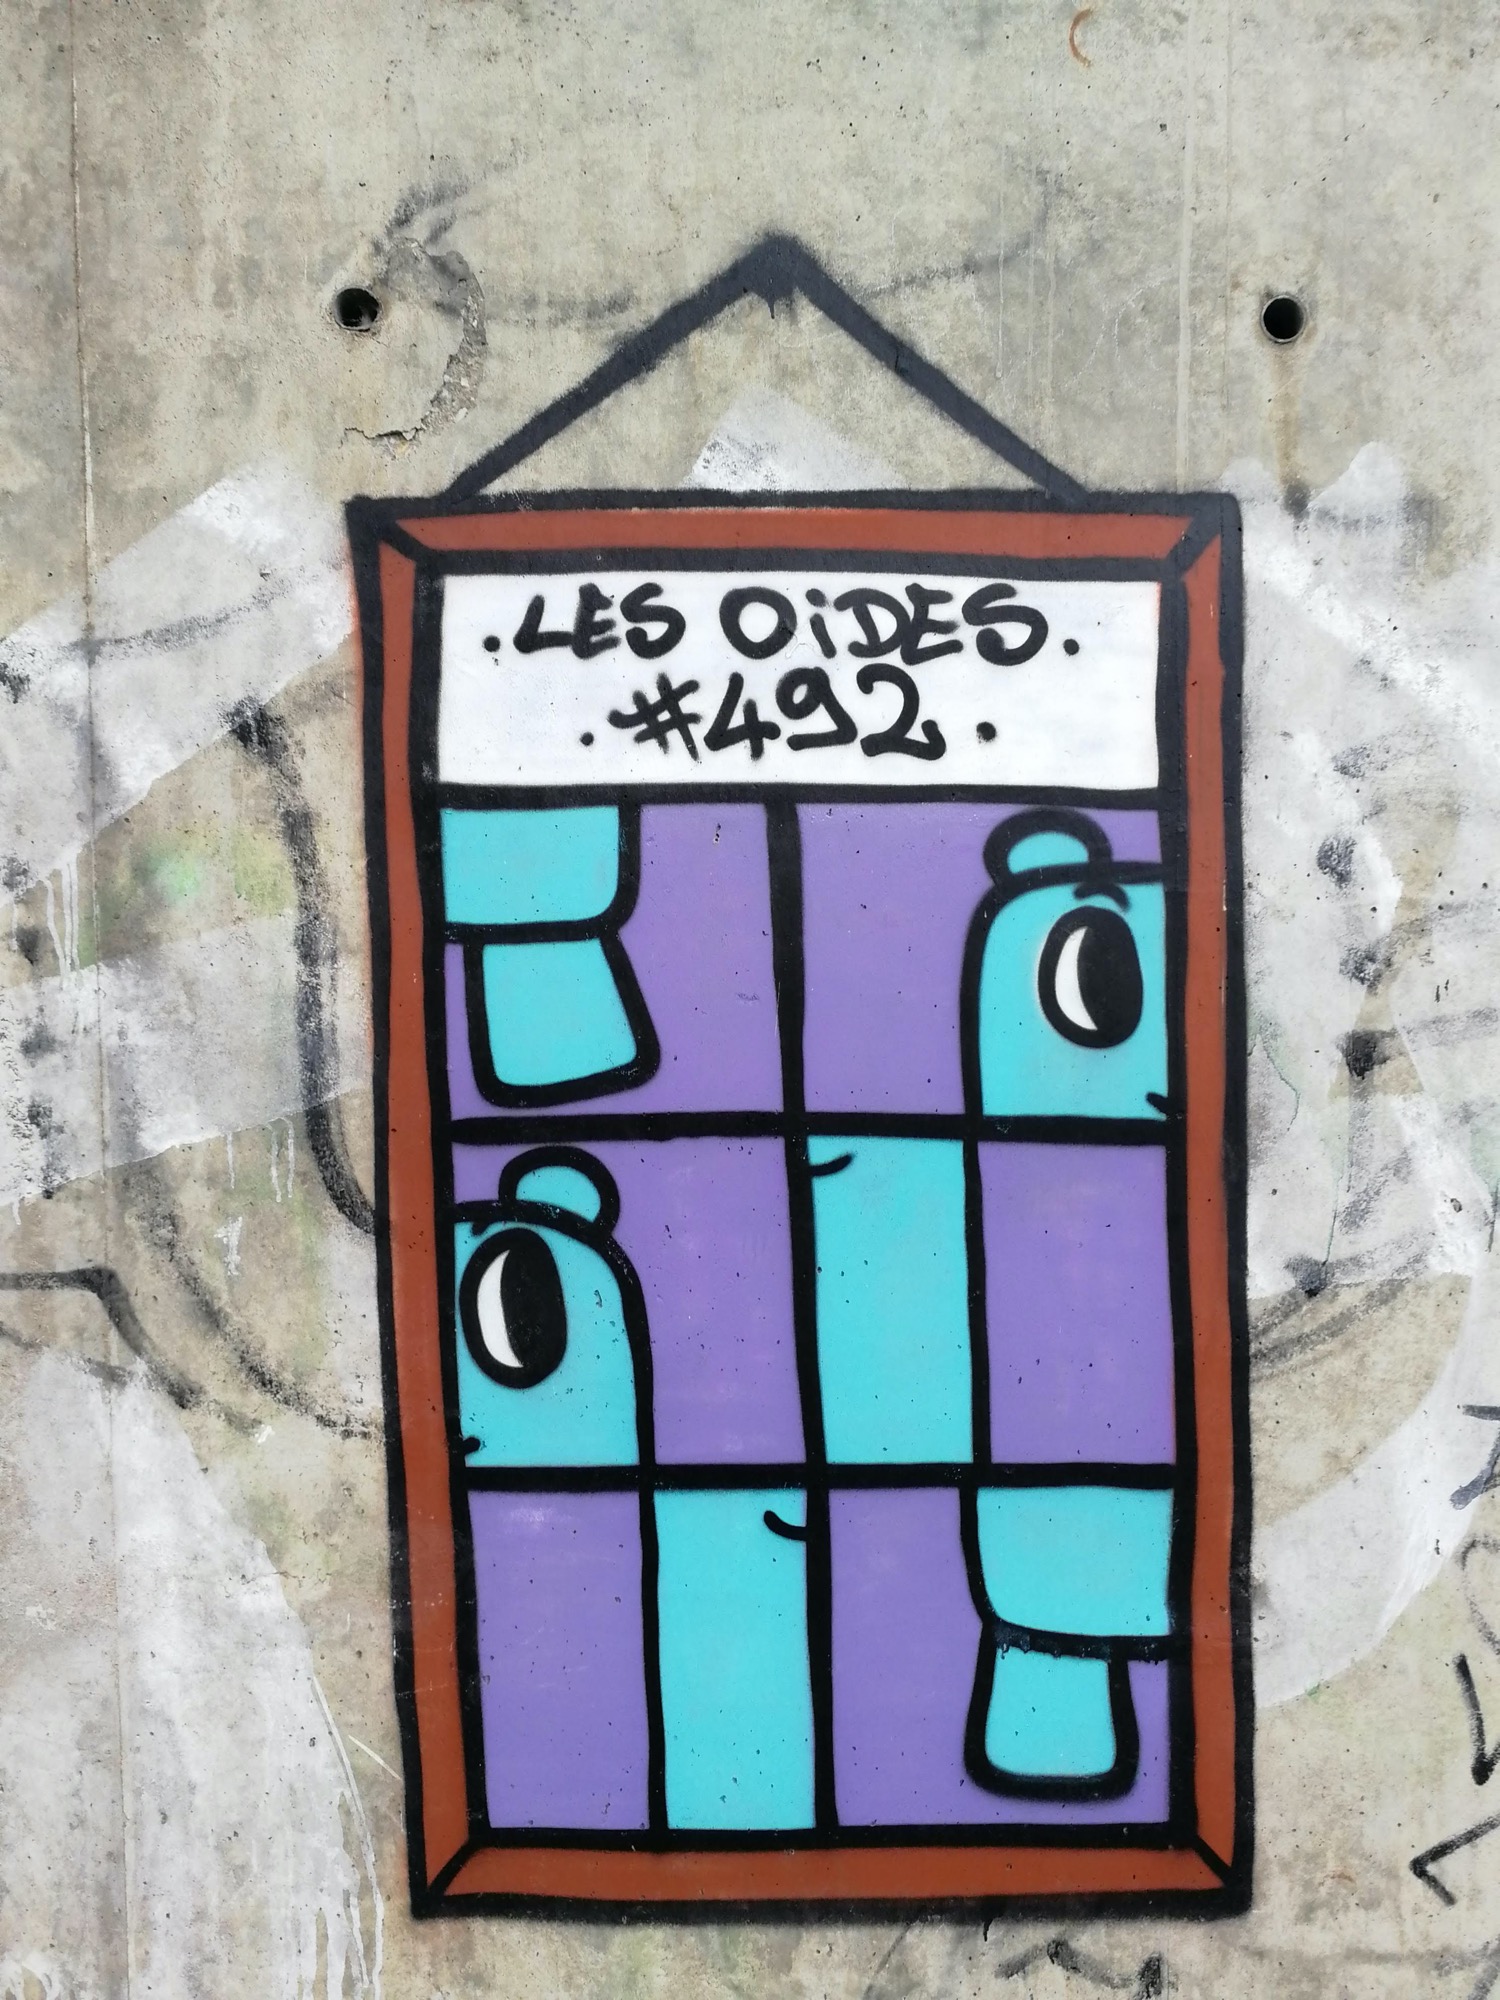 Graffiti 1315 Les oides #492 de Les Oides capturé par Rabot à Trignac France